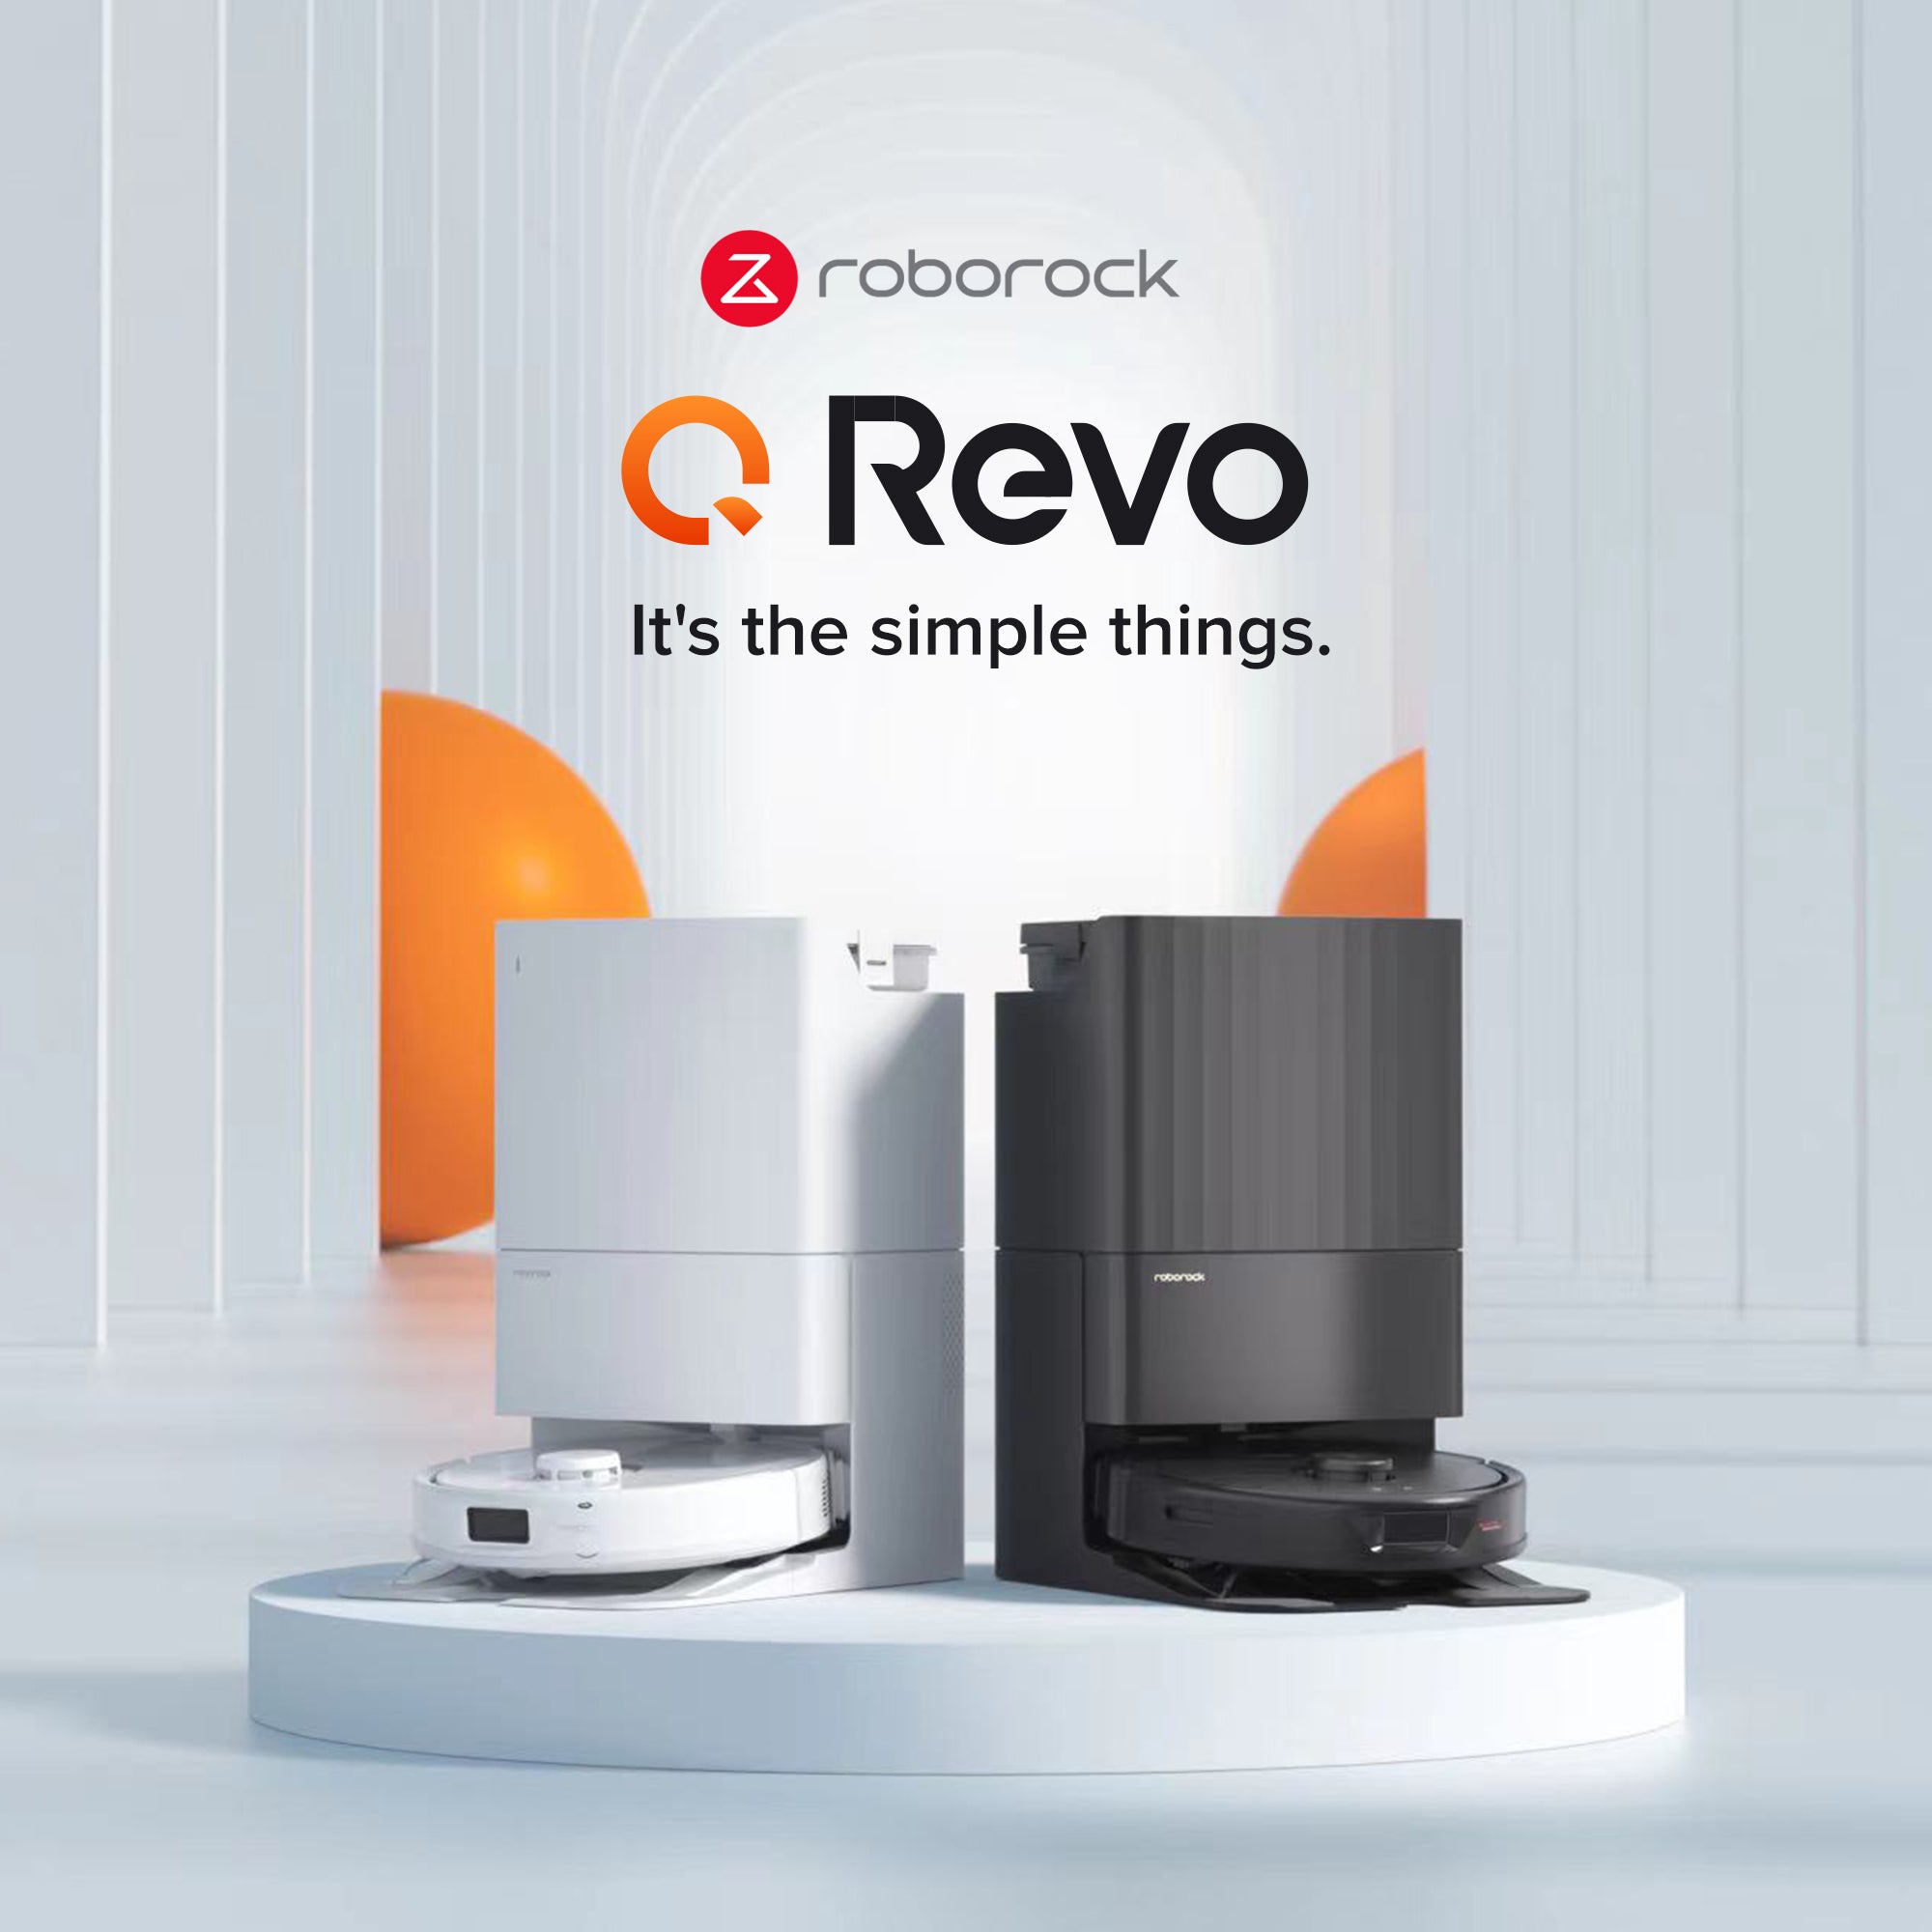 Roborock Q REVO Robot Aspirateur avec Base Multifonctionnelle Blanc